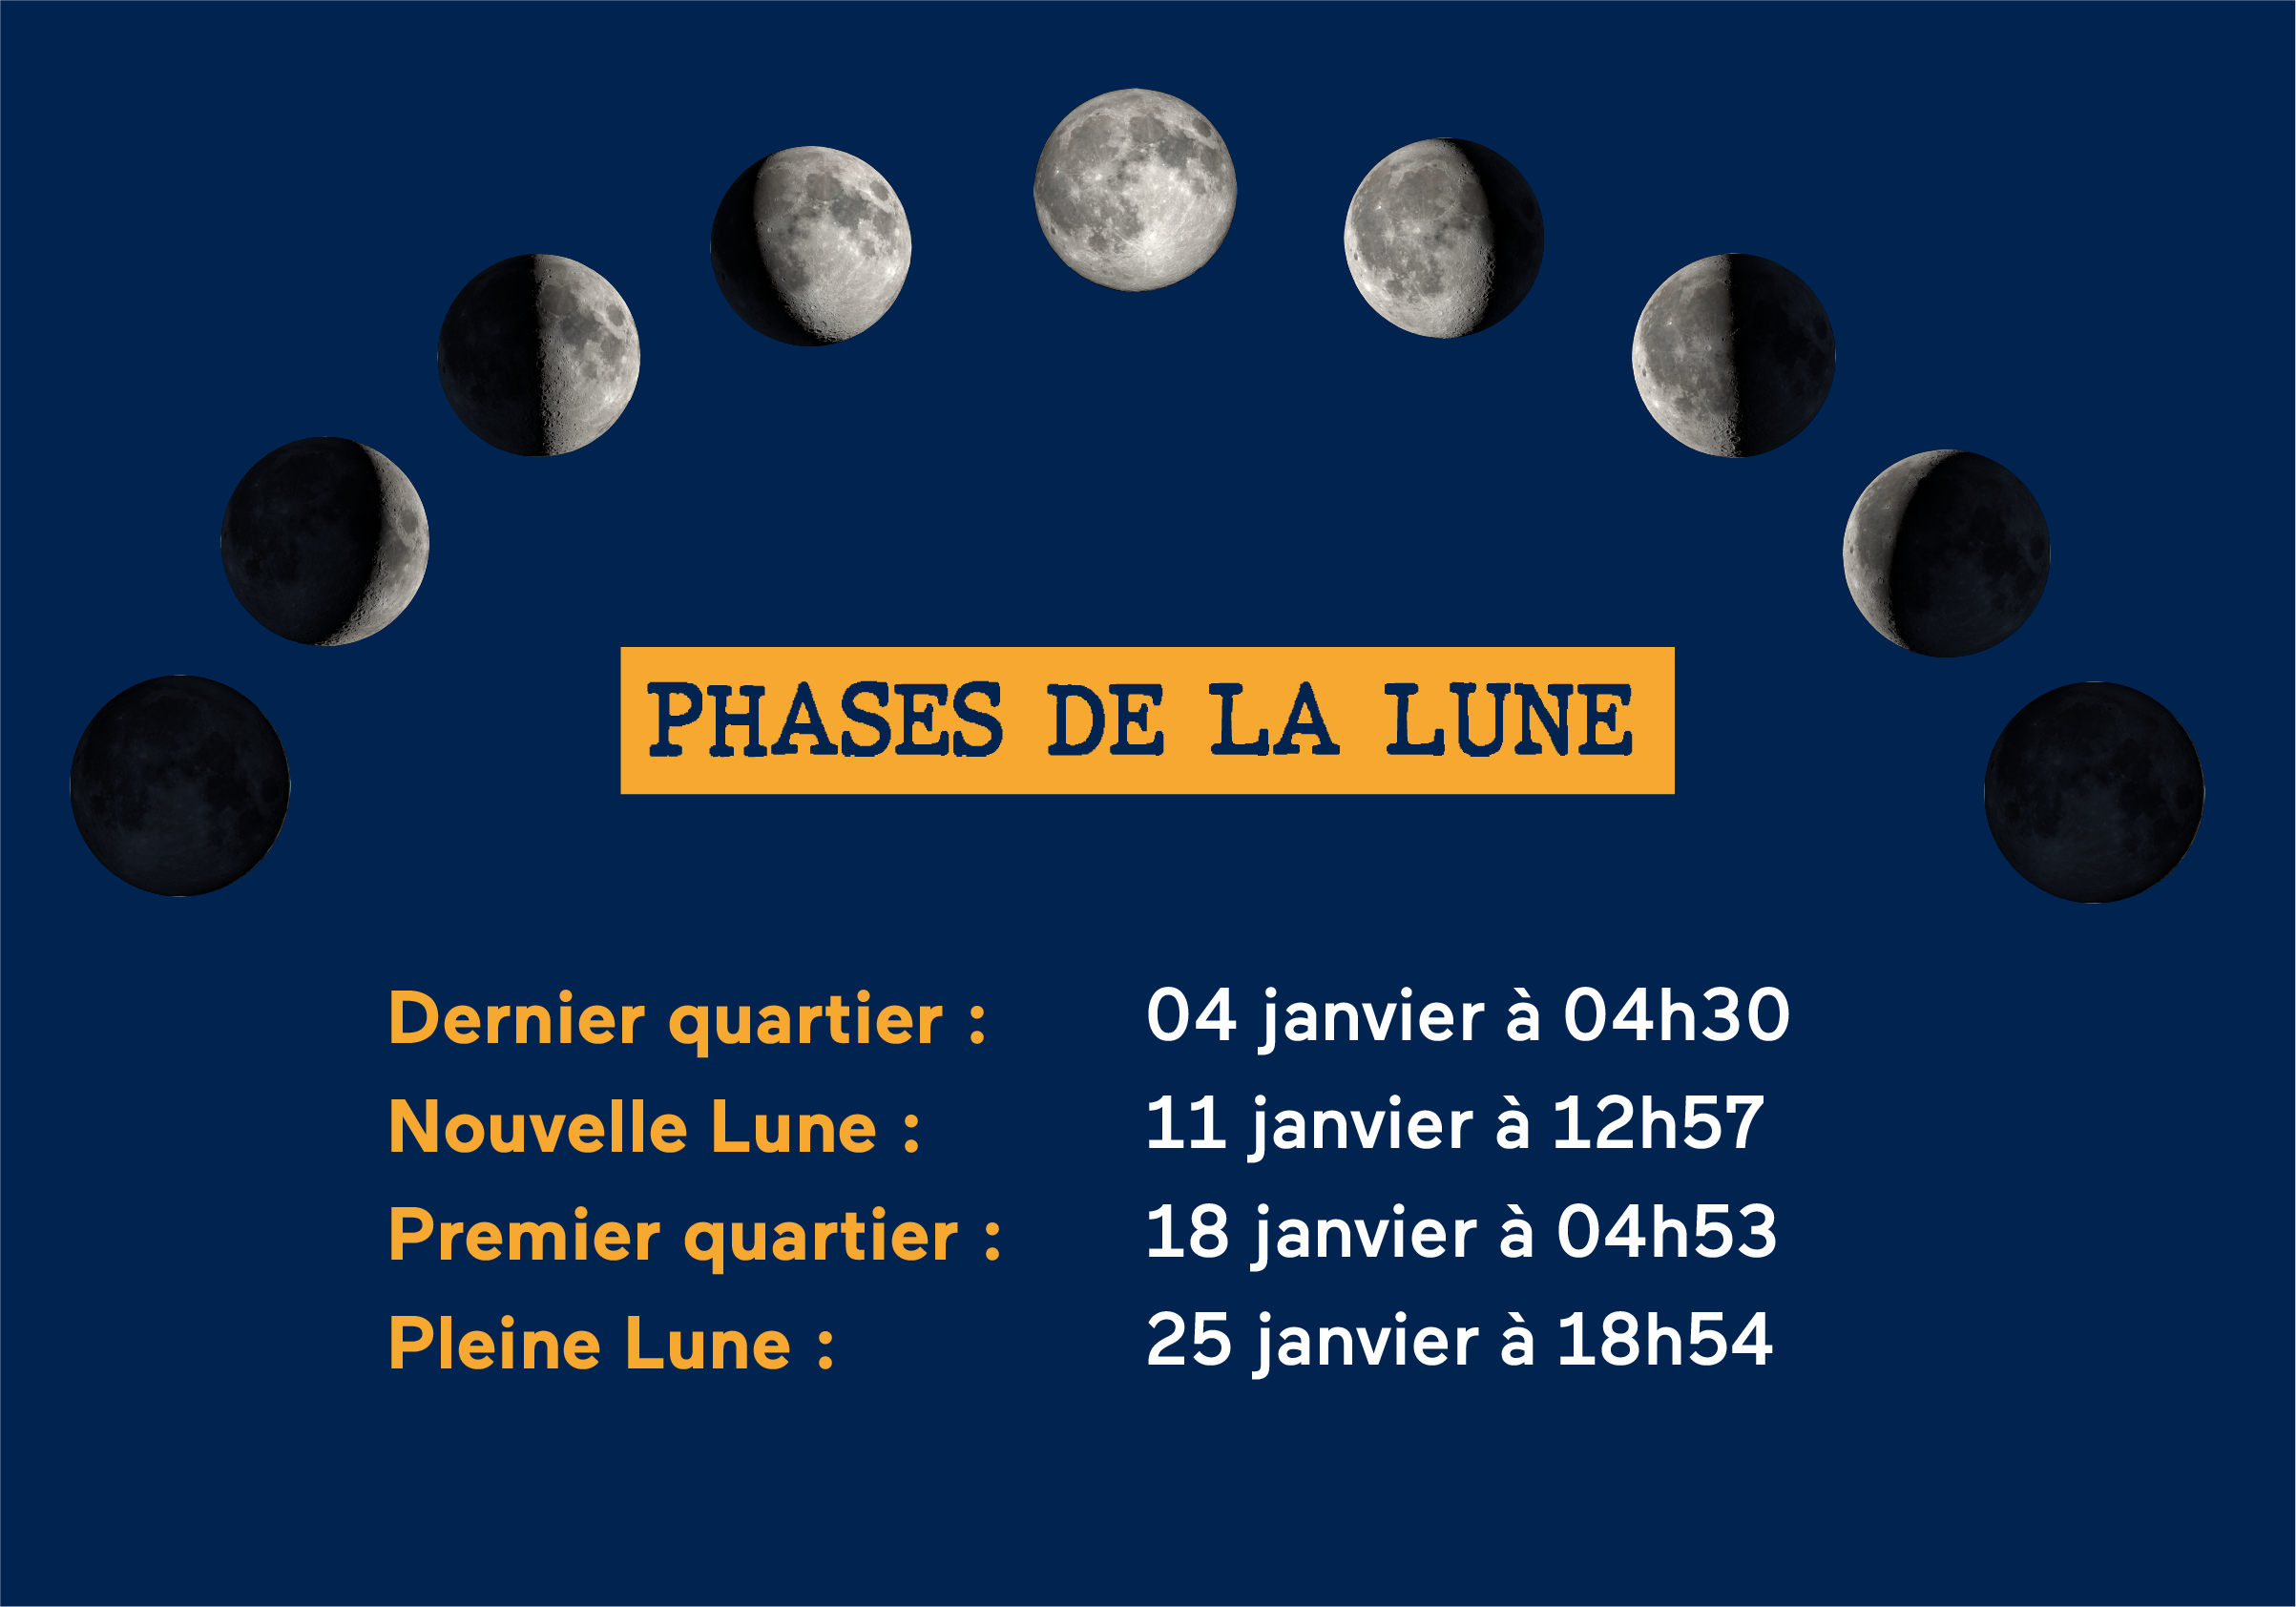 Calendrier Lunaire 2024, Phases de Lune 2024 | Impression photo